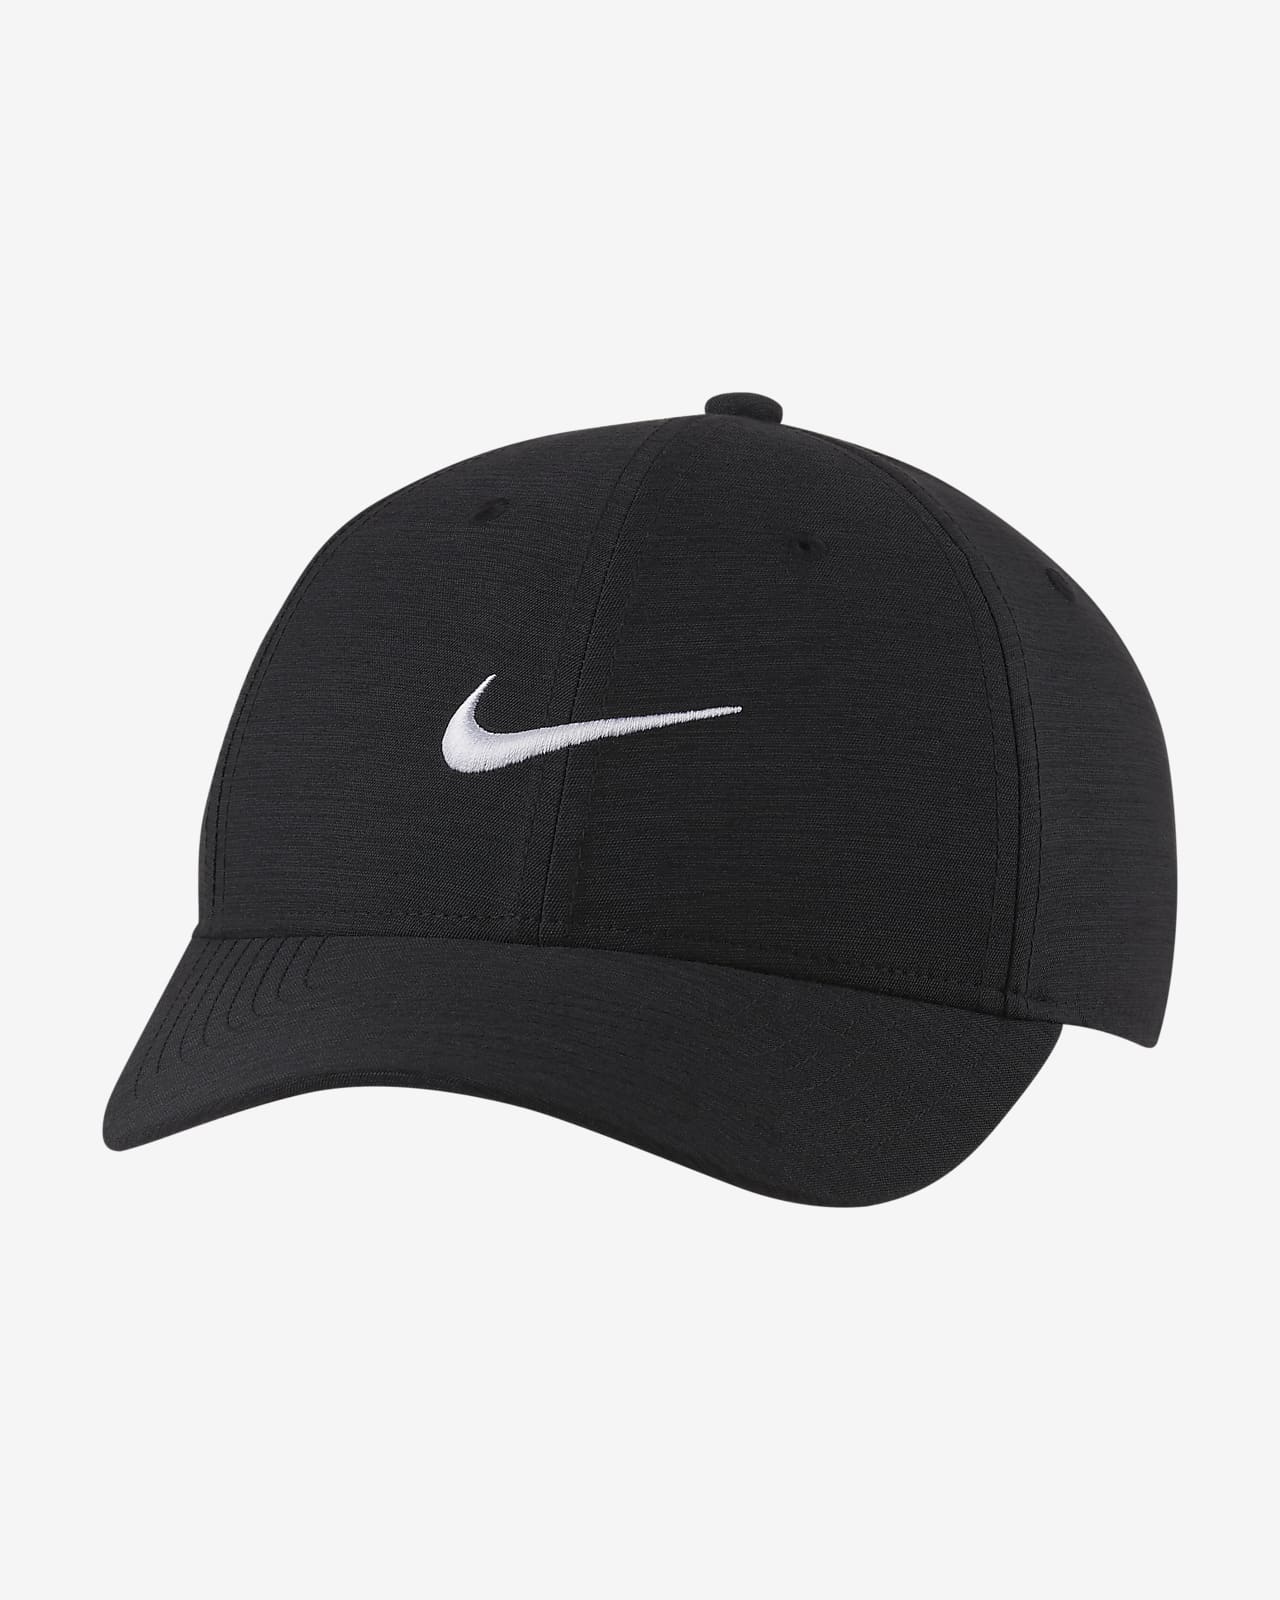 Nike Legacy91 Golf Hat